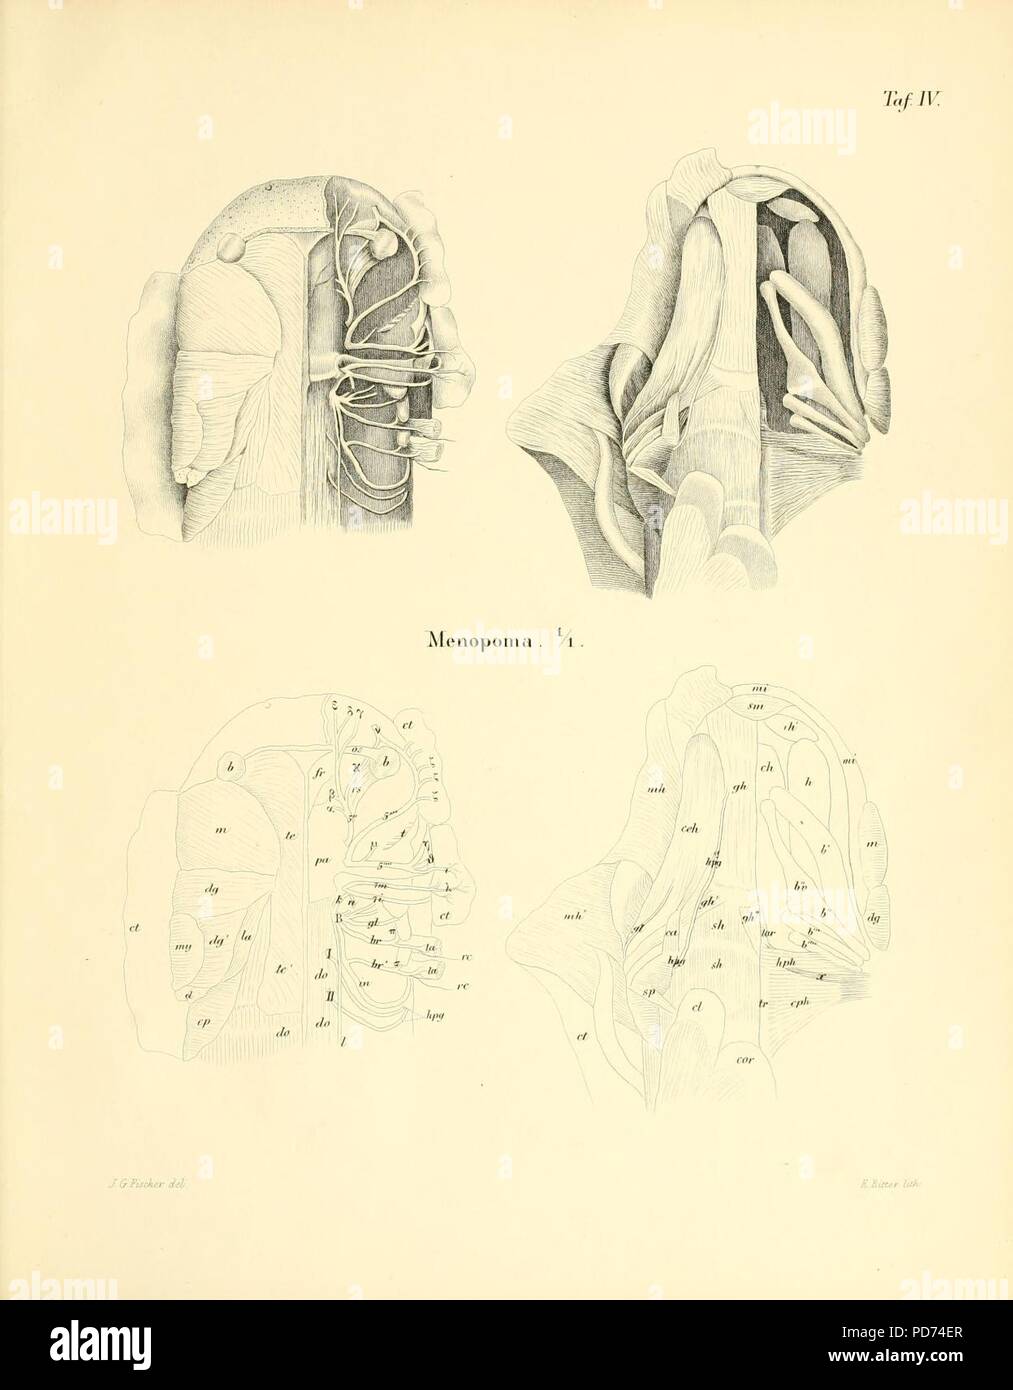 Anatomische abhandlungen über die perennibranchiaten und derotremen (Taf. IV) Stock Photo